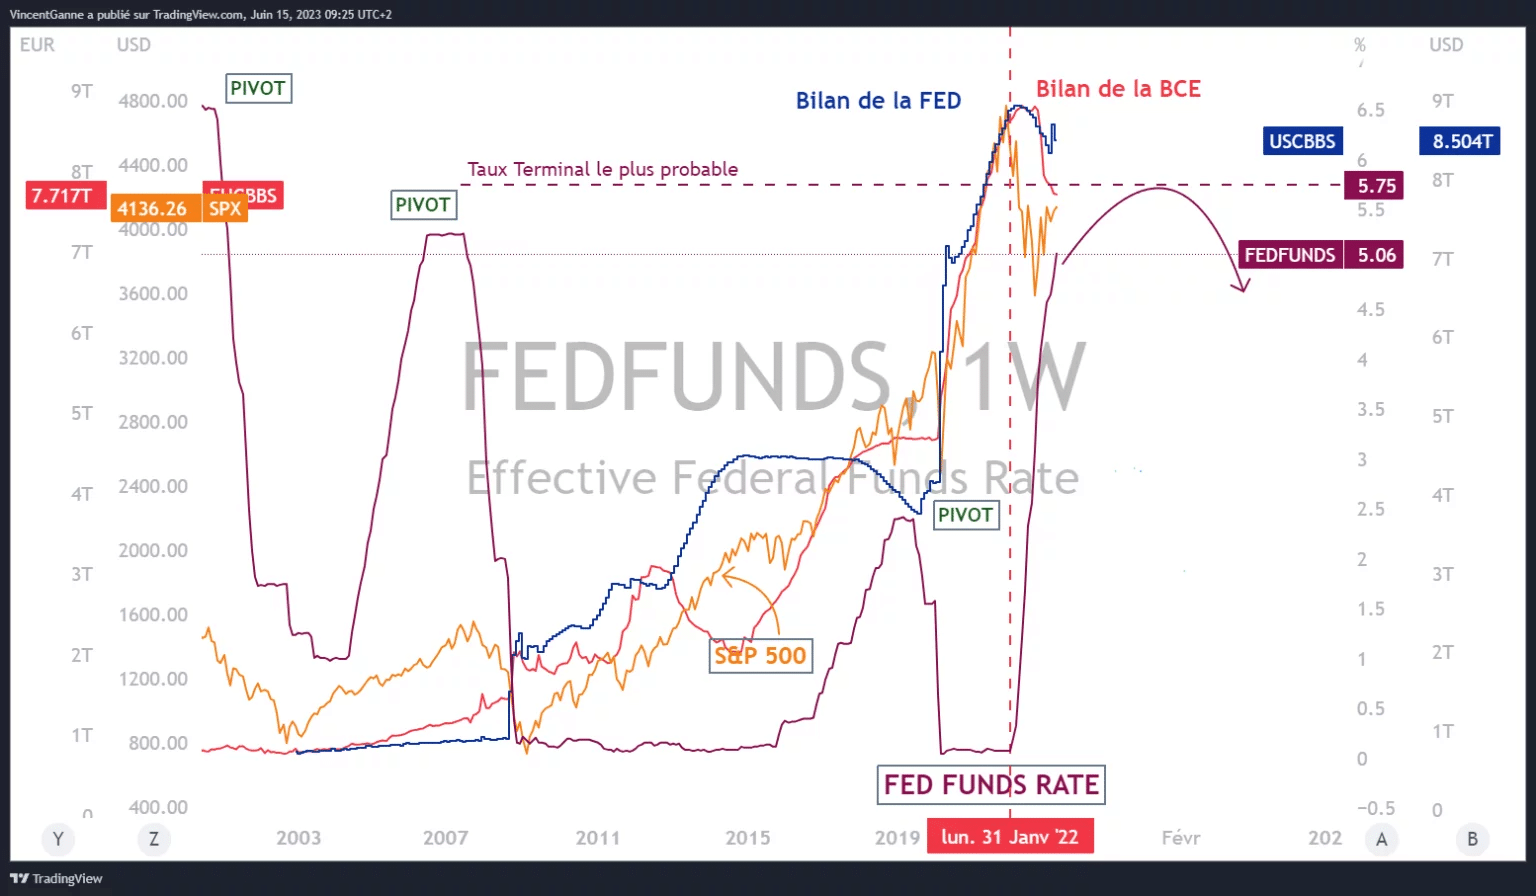 Gráfico produzido com o sítio TradingView e que mostra as seguintes informações: a taxa de juro dos fundos da FED, a taxa terminal mais provável da FED, o balanço da FED e o balanço do BCE